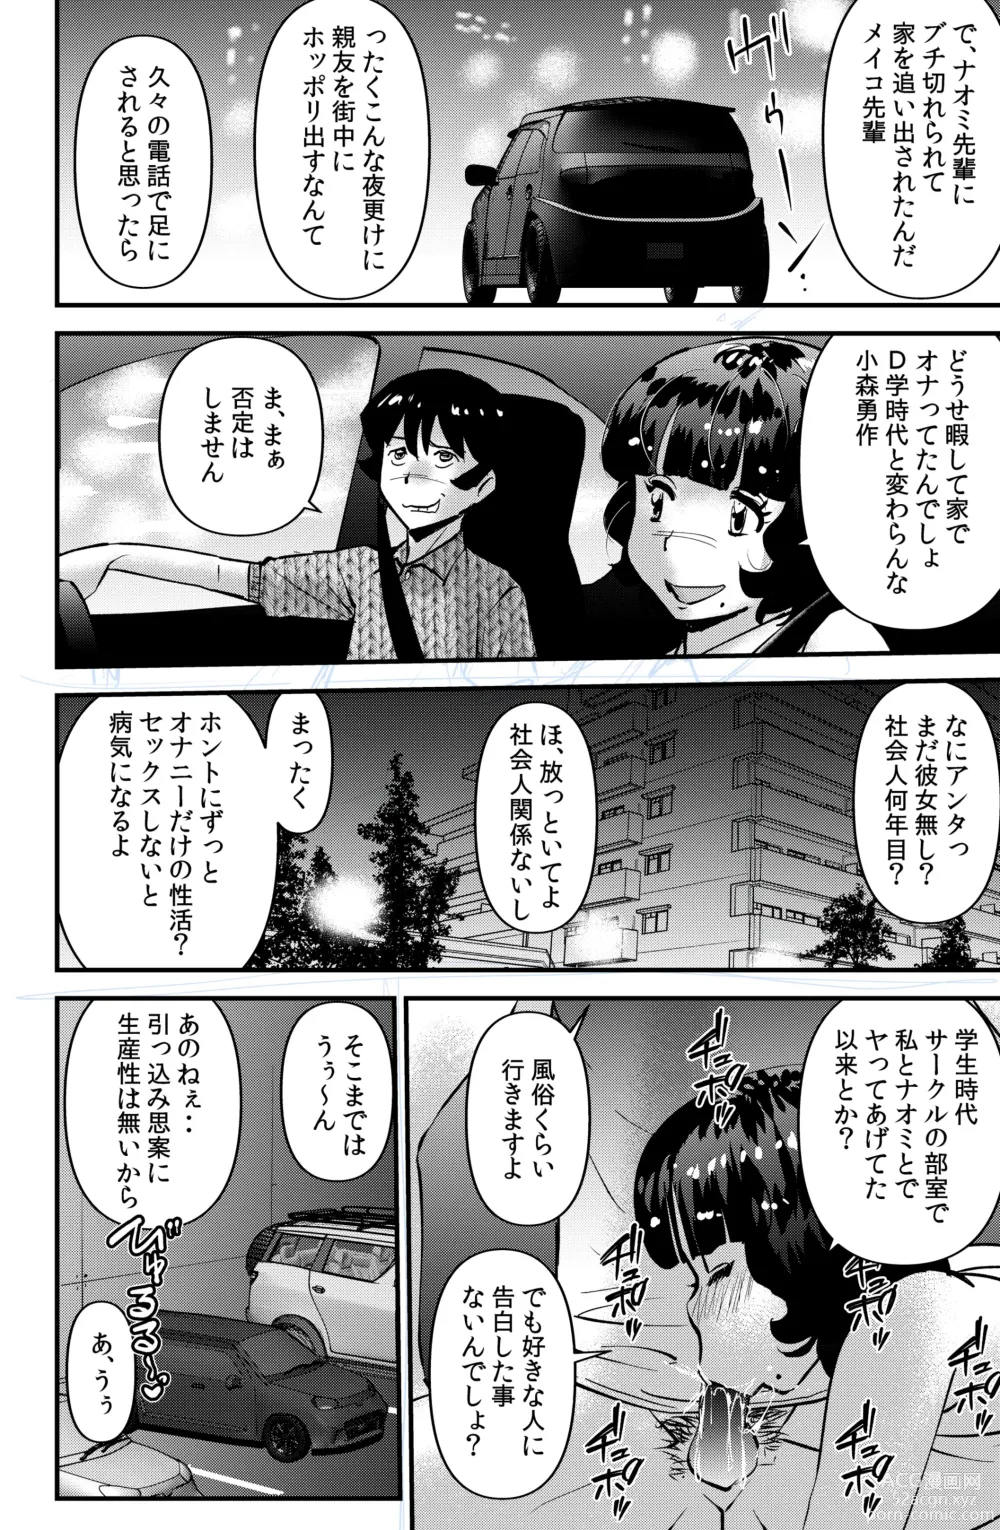 Page 20 of doujinshi Souda! Sensei de Ikou.